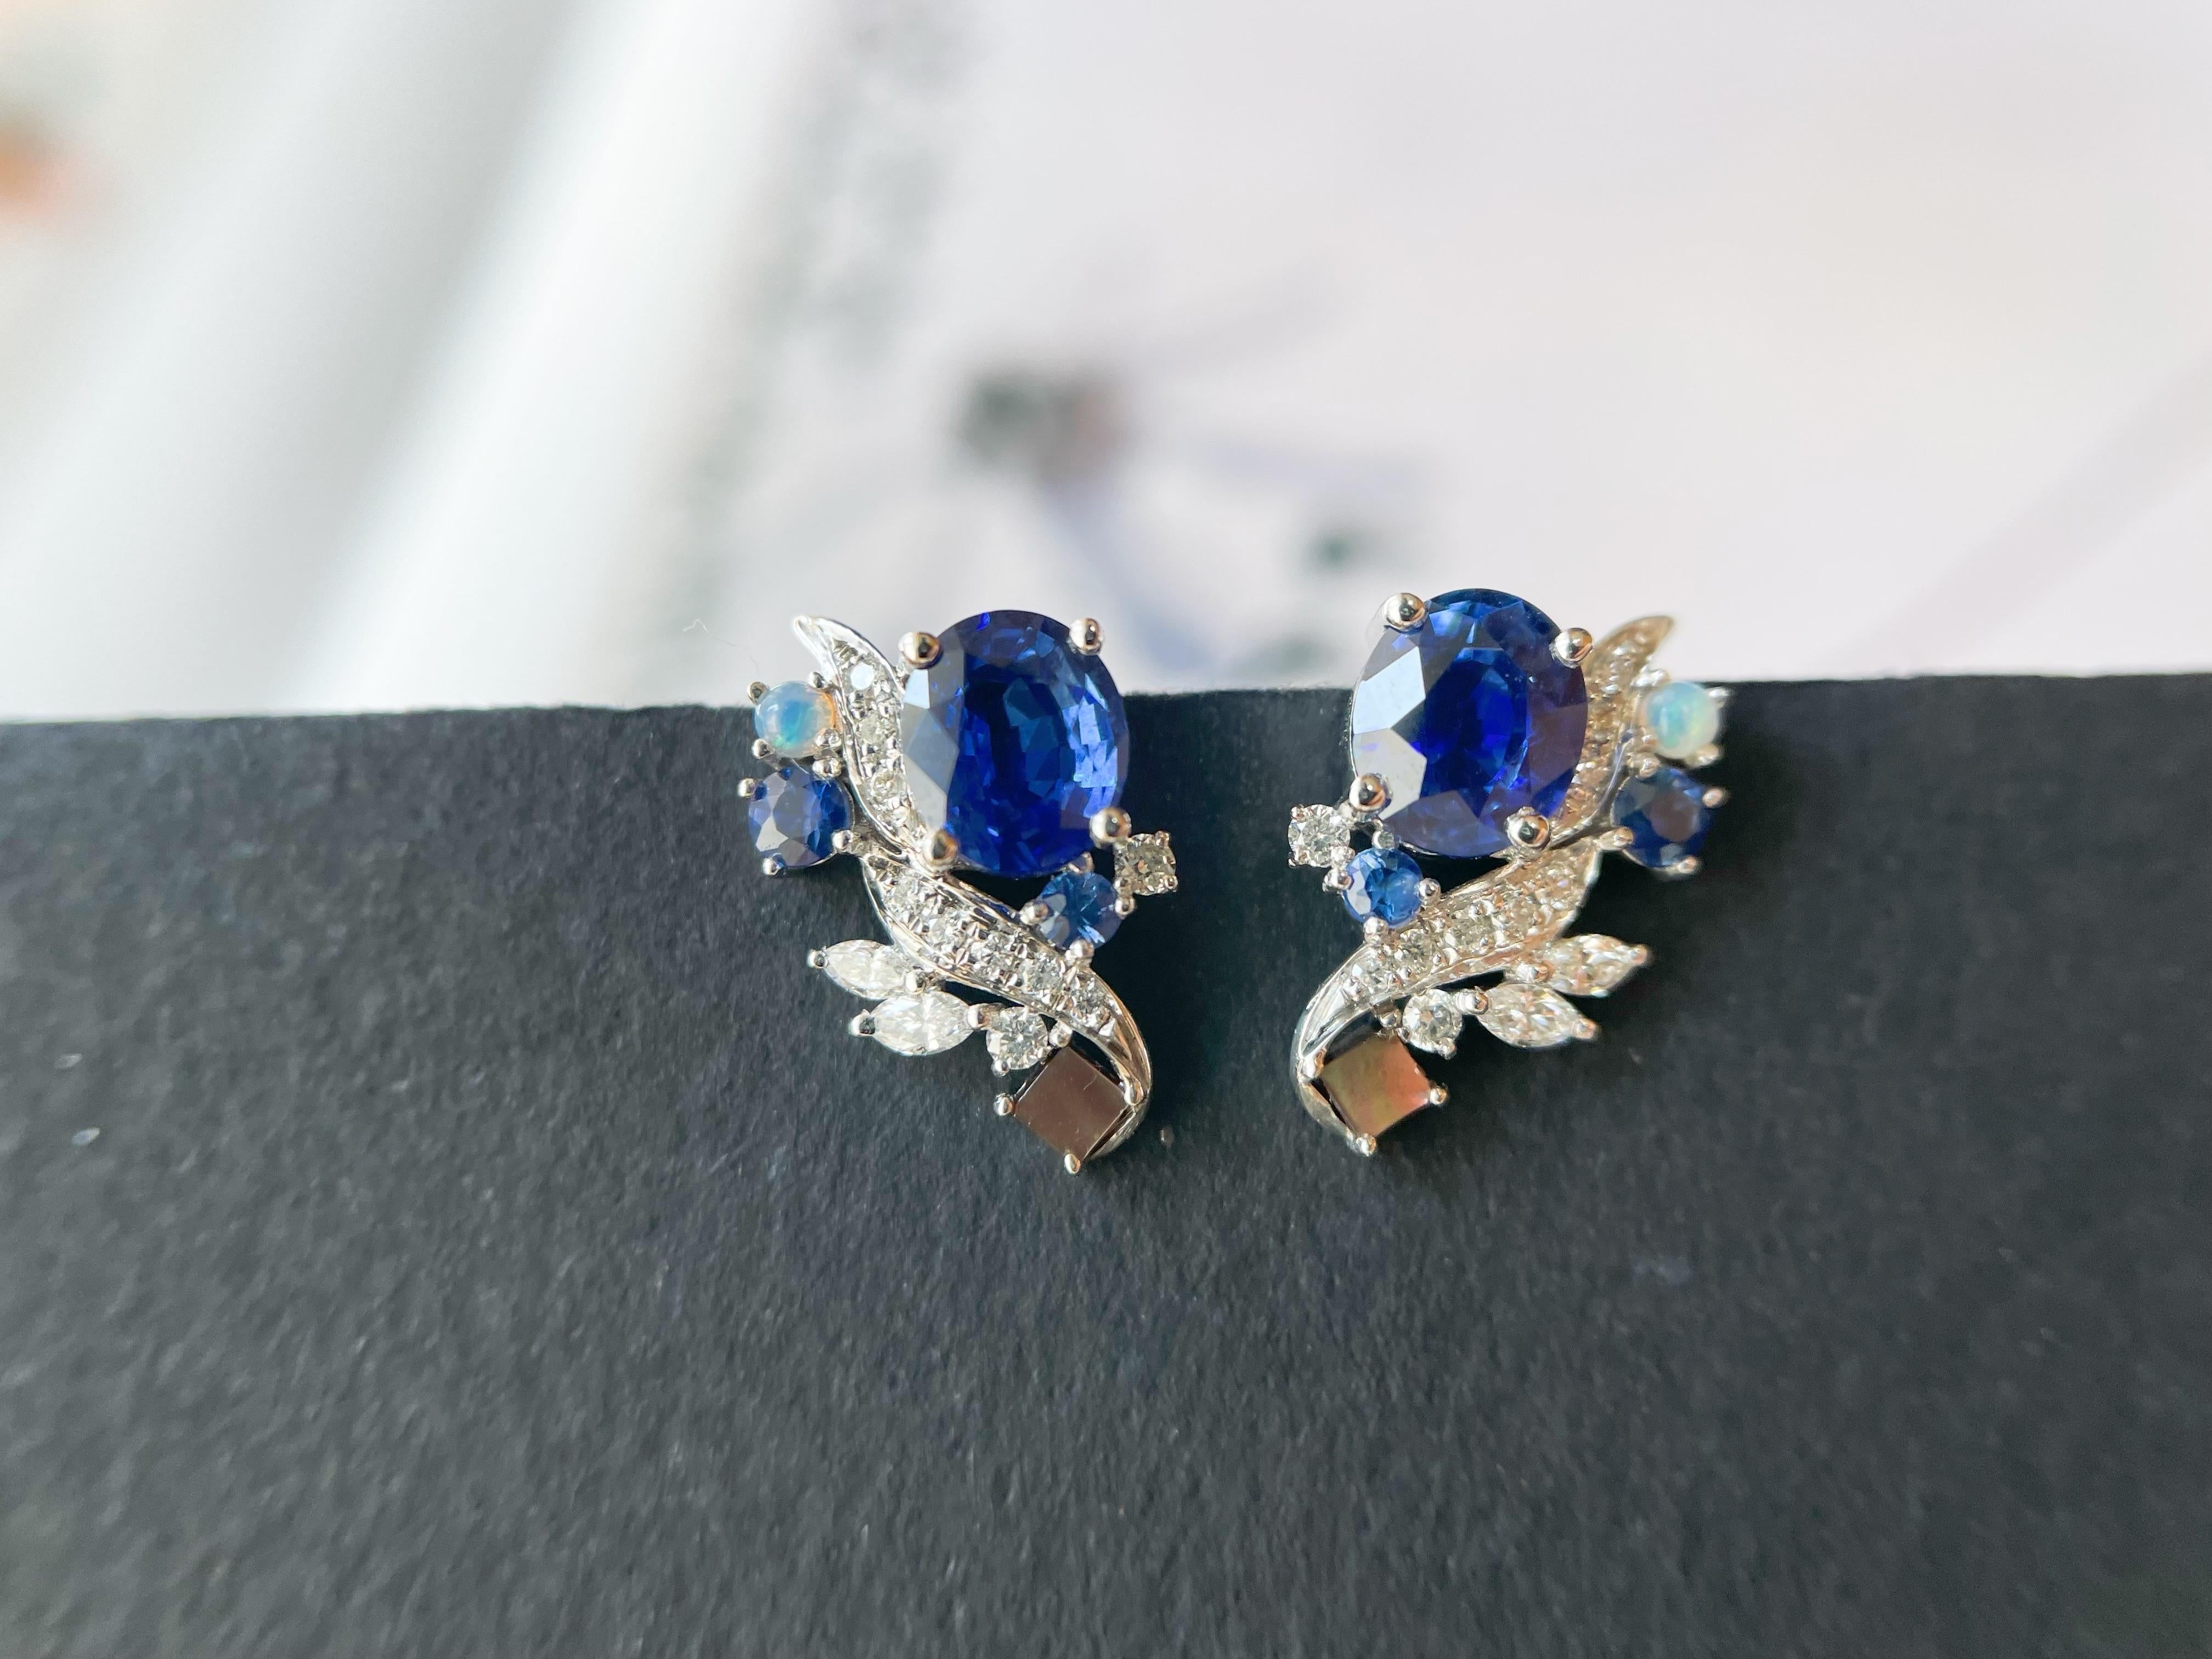 Modern Natural Sri Lanka Royal Blue Sapphire Earrings in 18k White Gold, Opal, Pearl For Sale